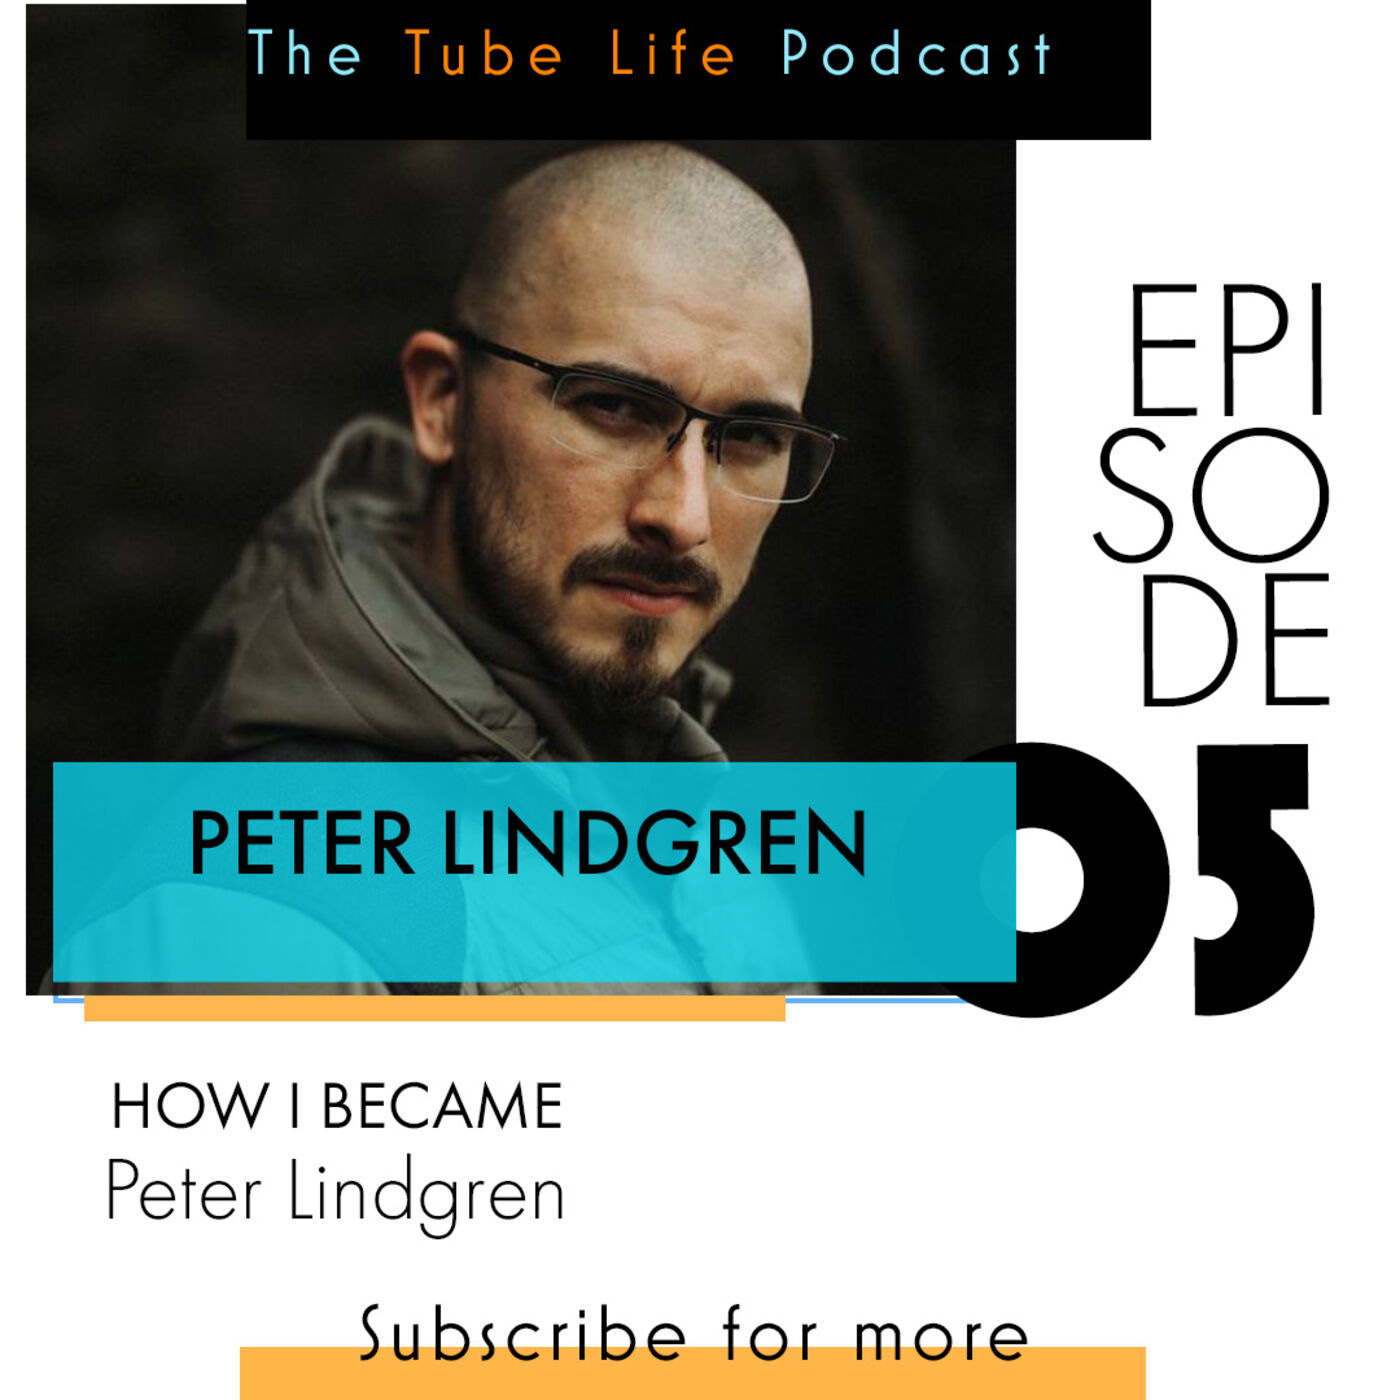 How I became Peter Lindgren